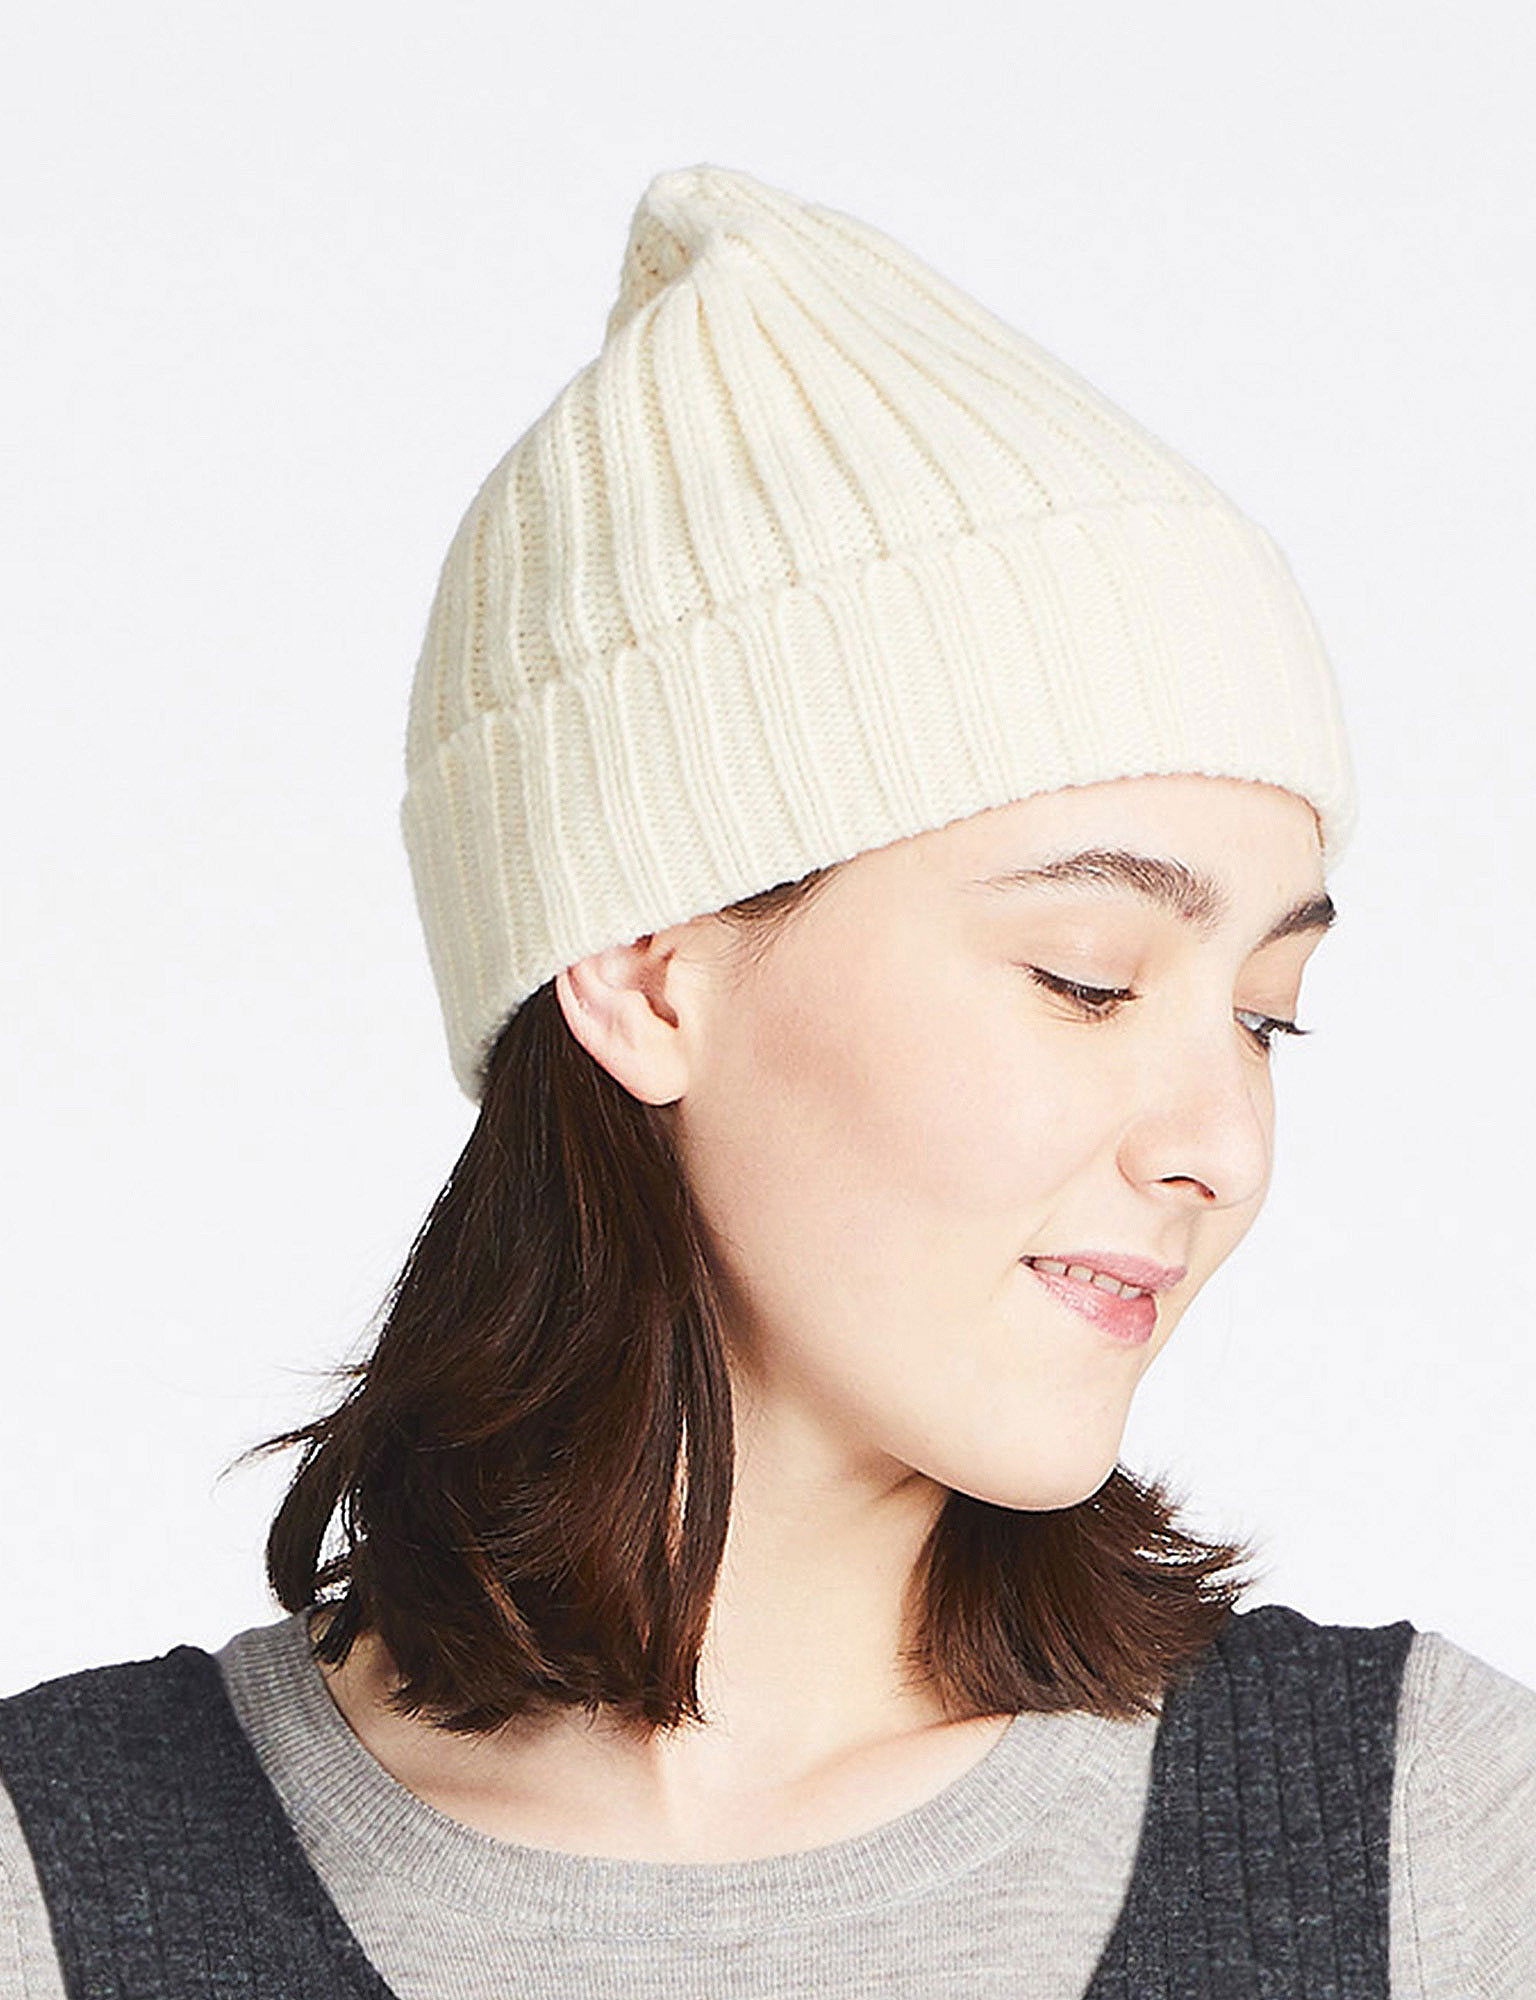 En images: retrouvez notre sélection de bonnets pour l'hiver - Challenges